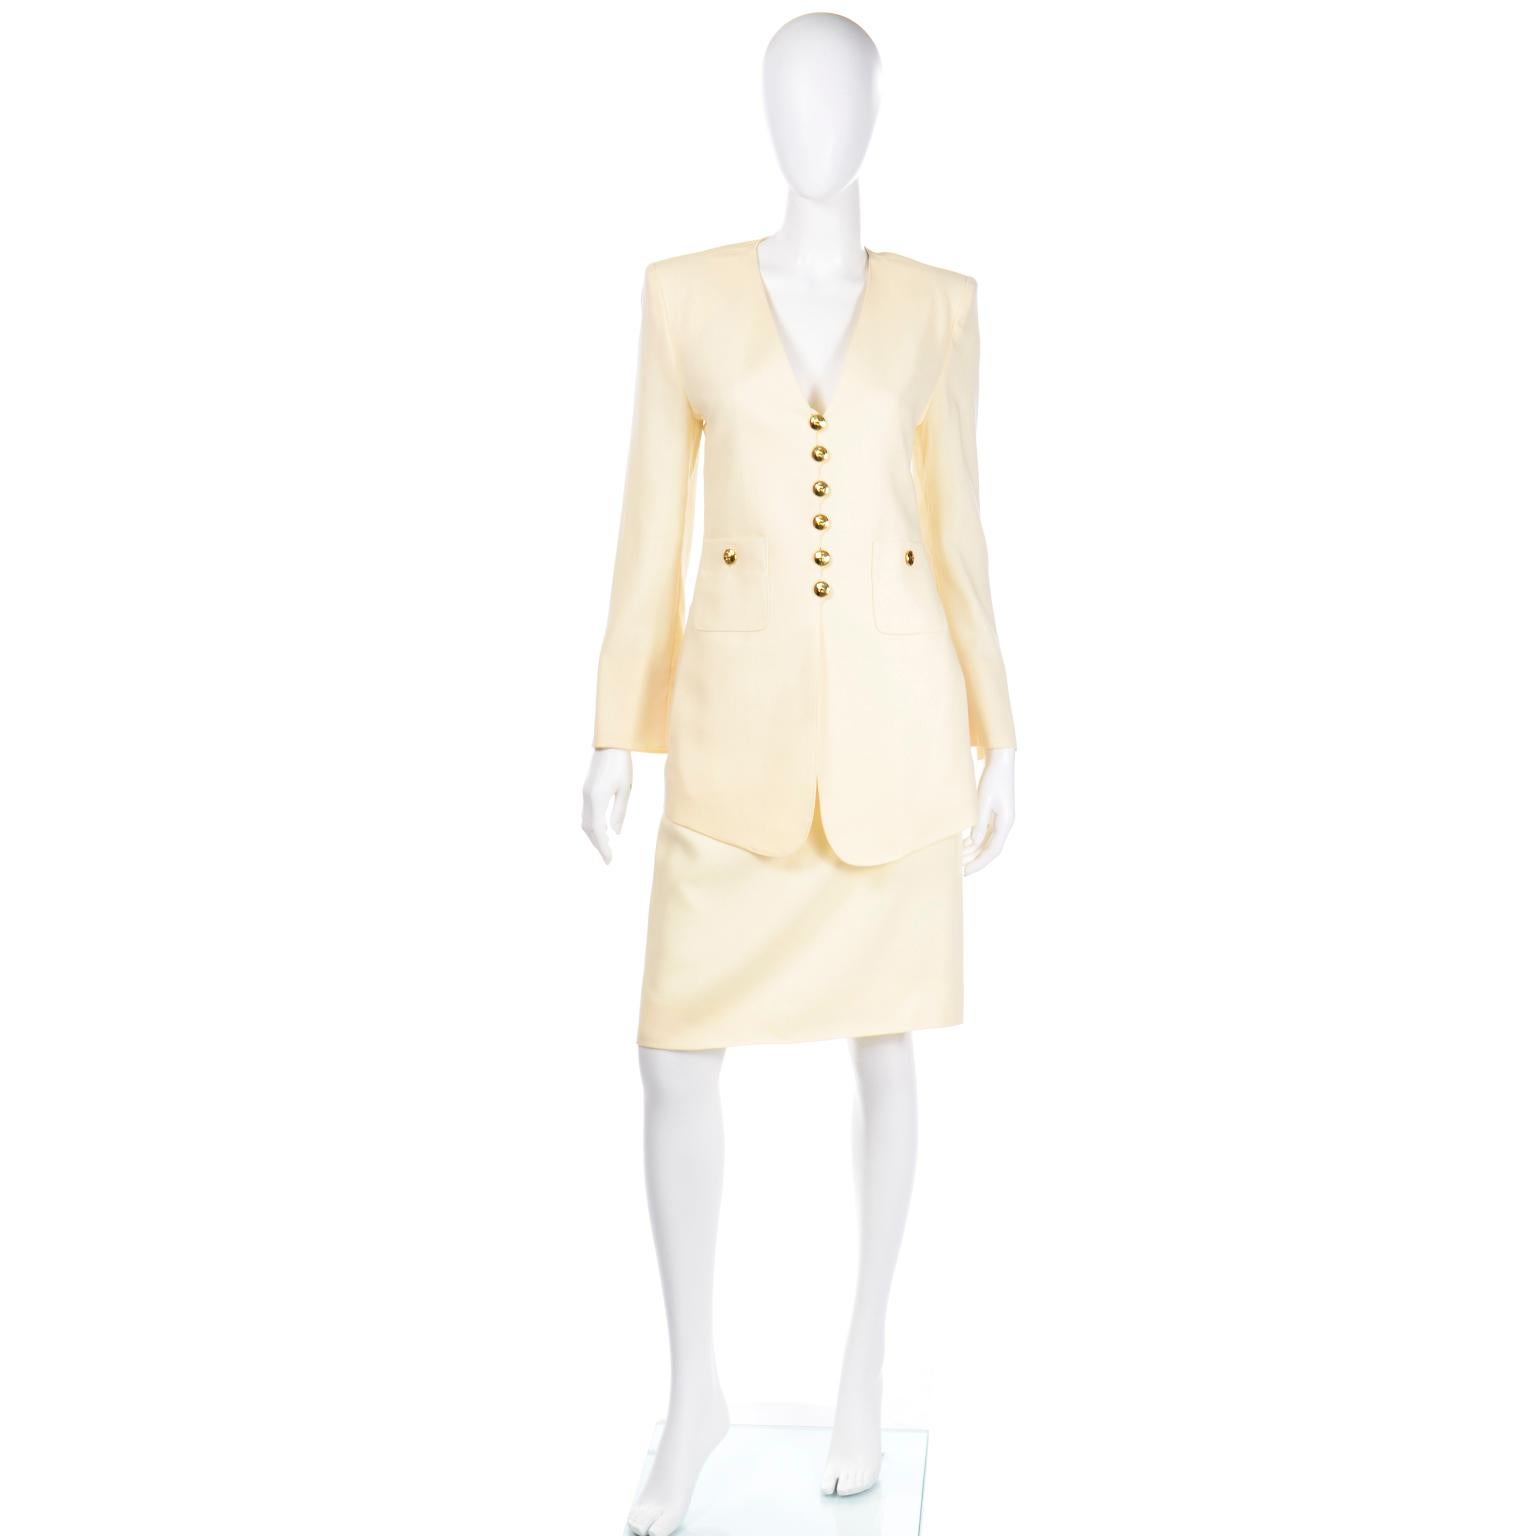 Dies ist eine so elegante, wunderschön gemacht Vintage cremefarbenen Elfenbein Wolle Jacke & Rock Anzug von Sonia Rykiel entworfen. Wenn Sie noch nie ein Kleidungsstück von Sonia Rykiel besessen haben, werden Sie sofort zum Fan, wenn Sie eines ihrer